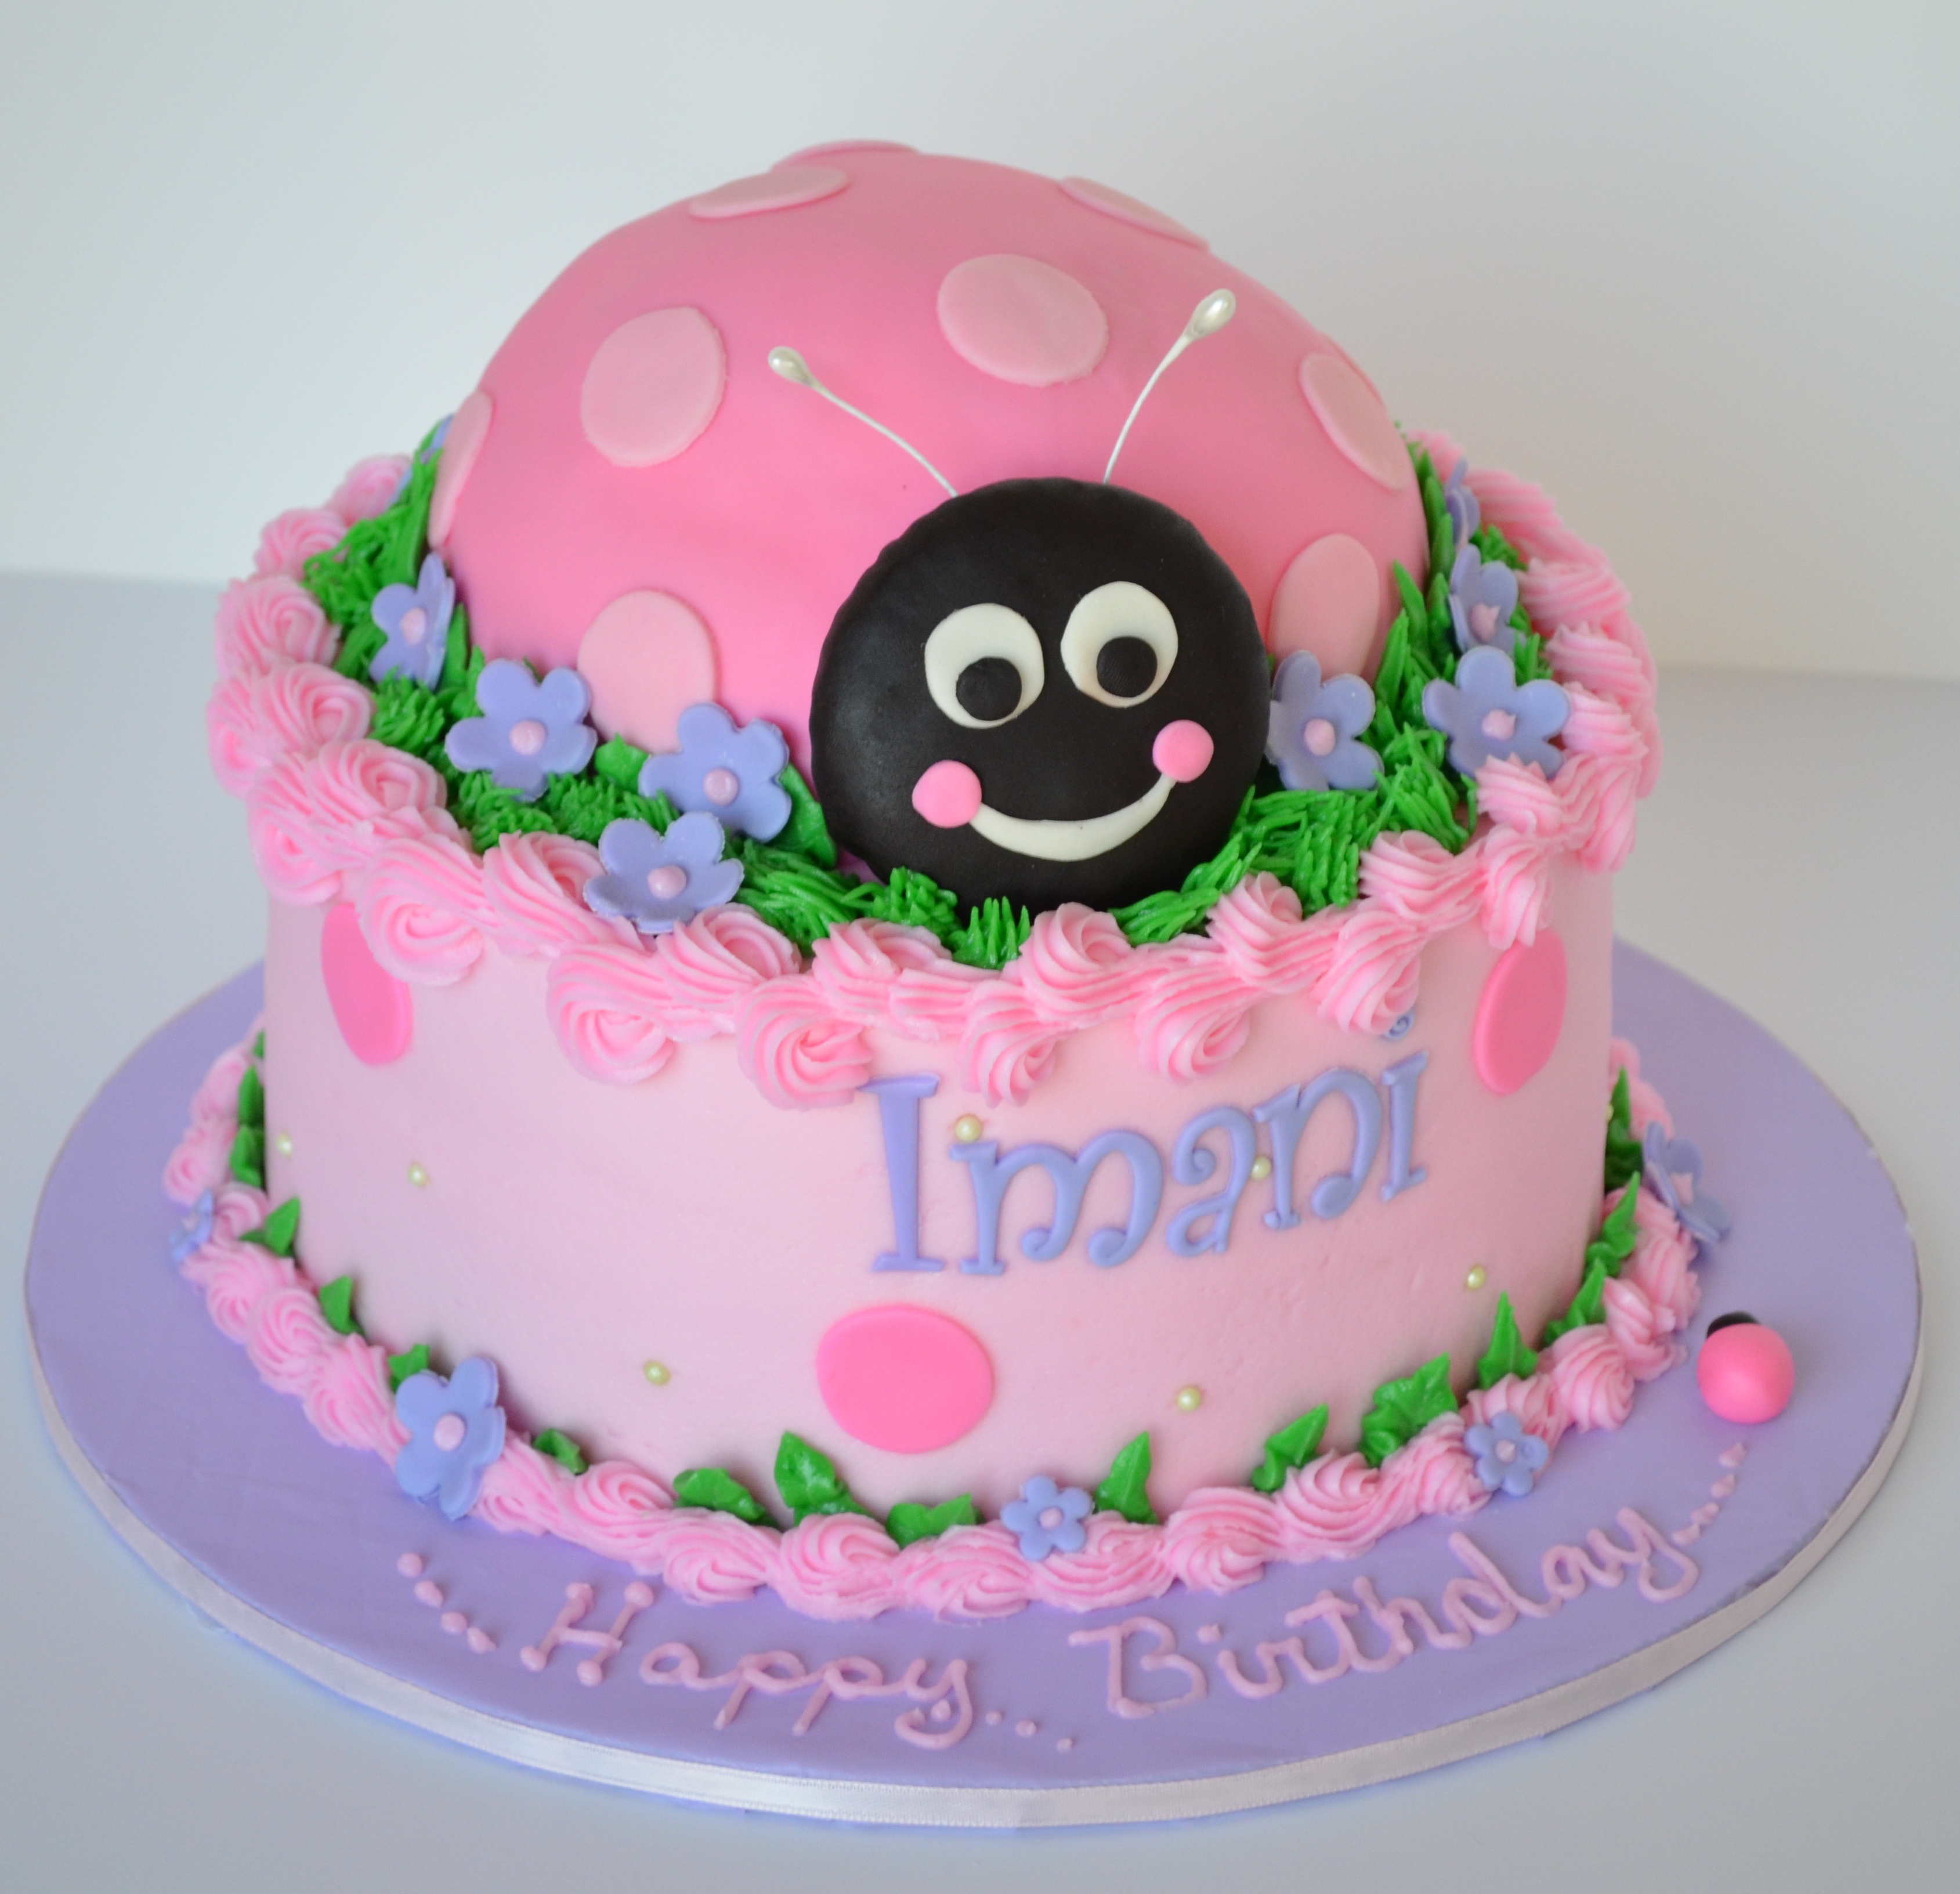 Ladybug Cakes - Decoration Ideas | Little Birthday Cakes